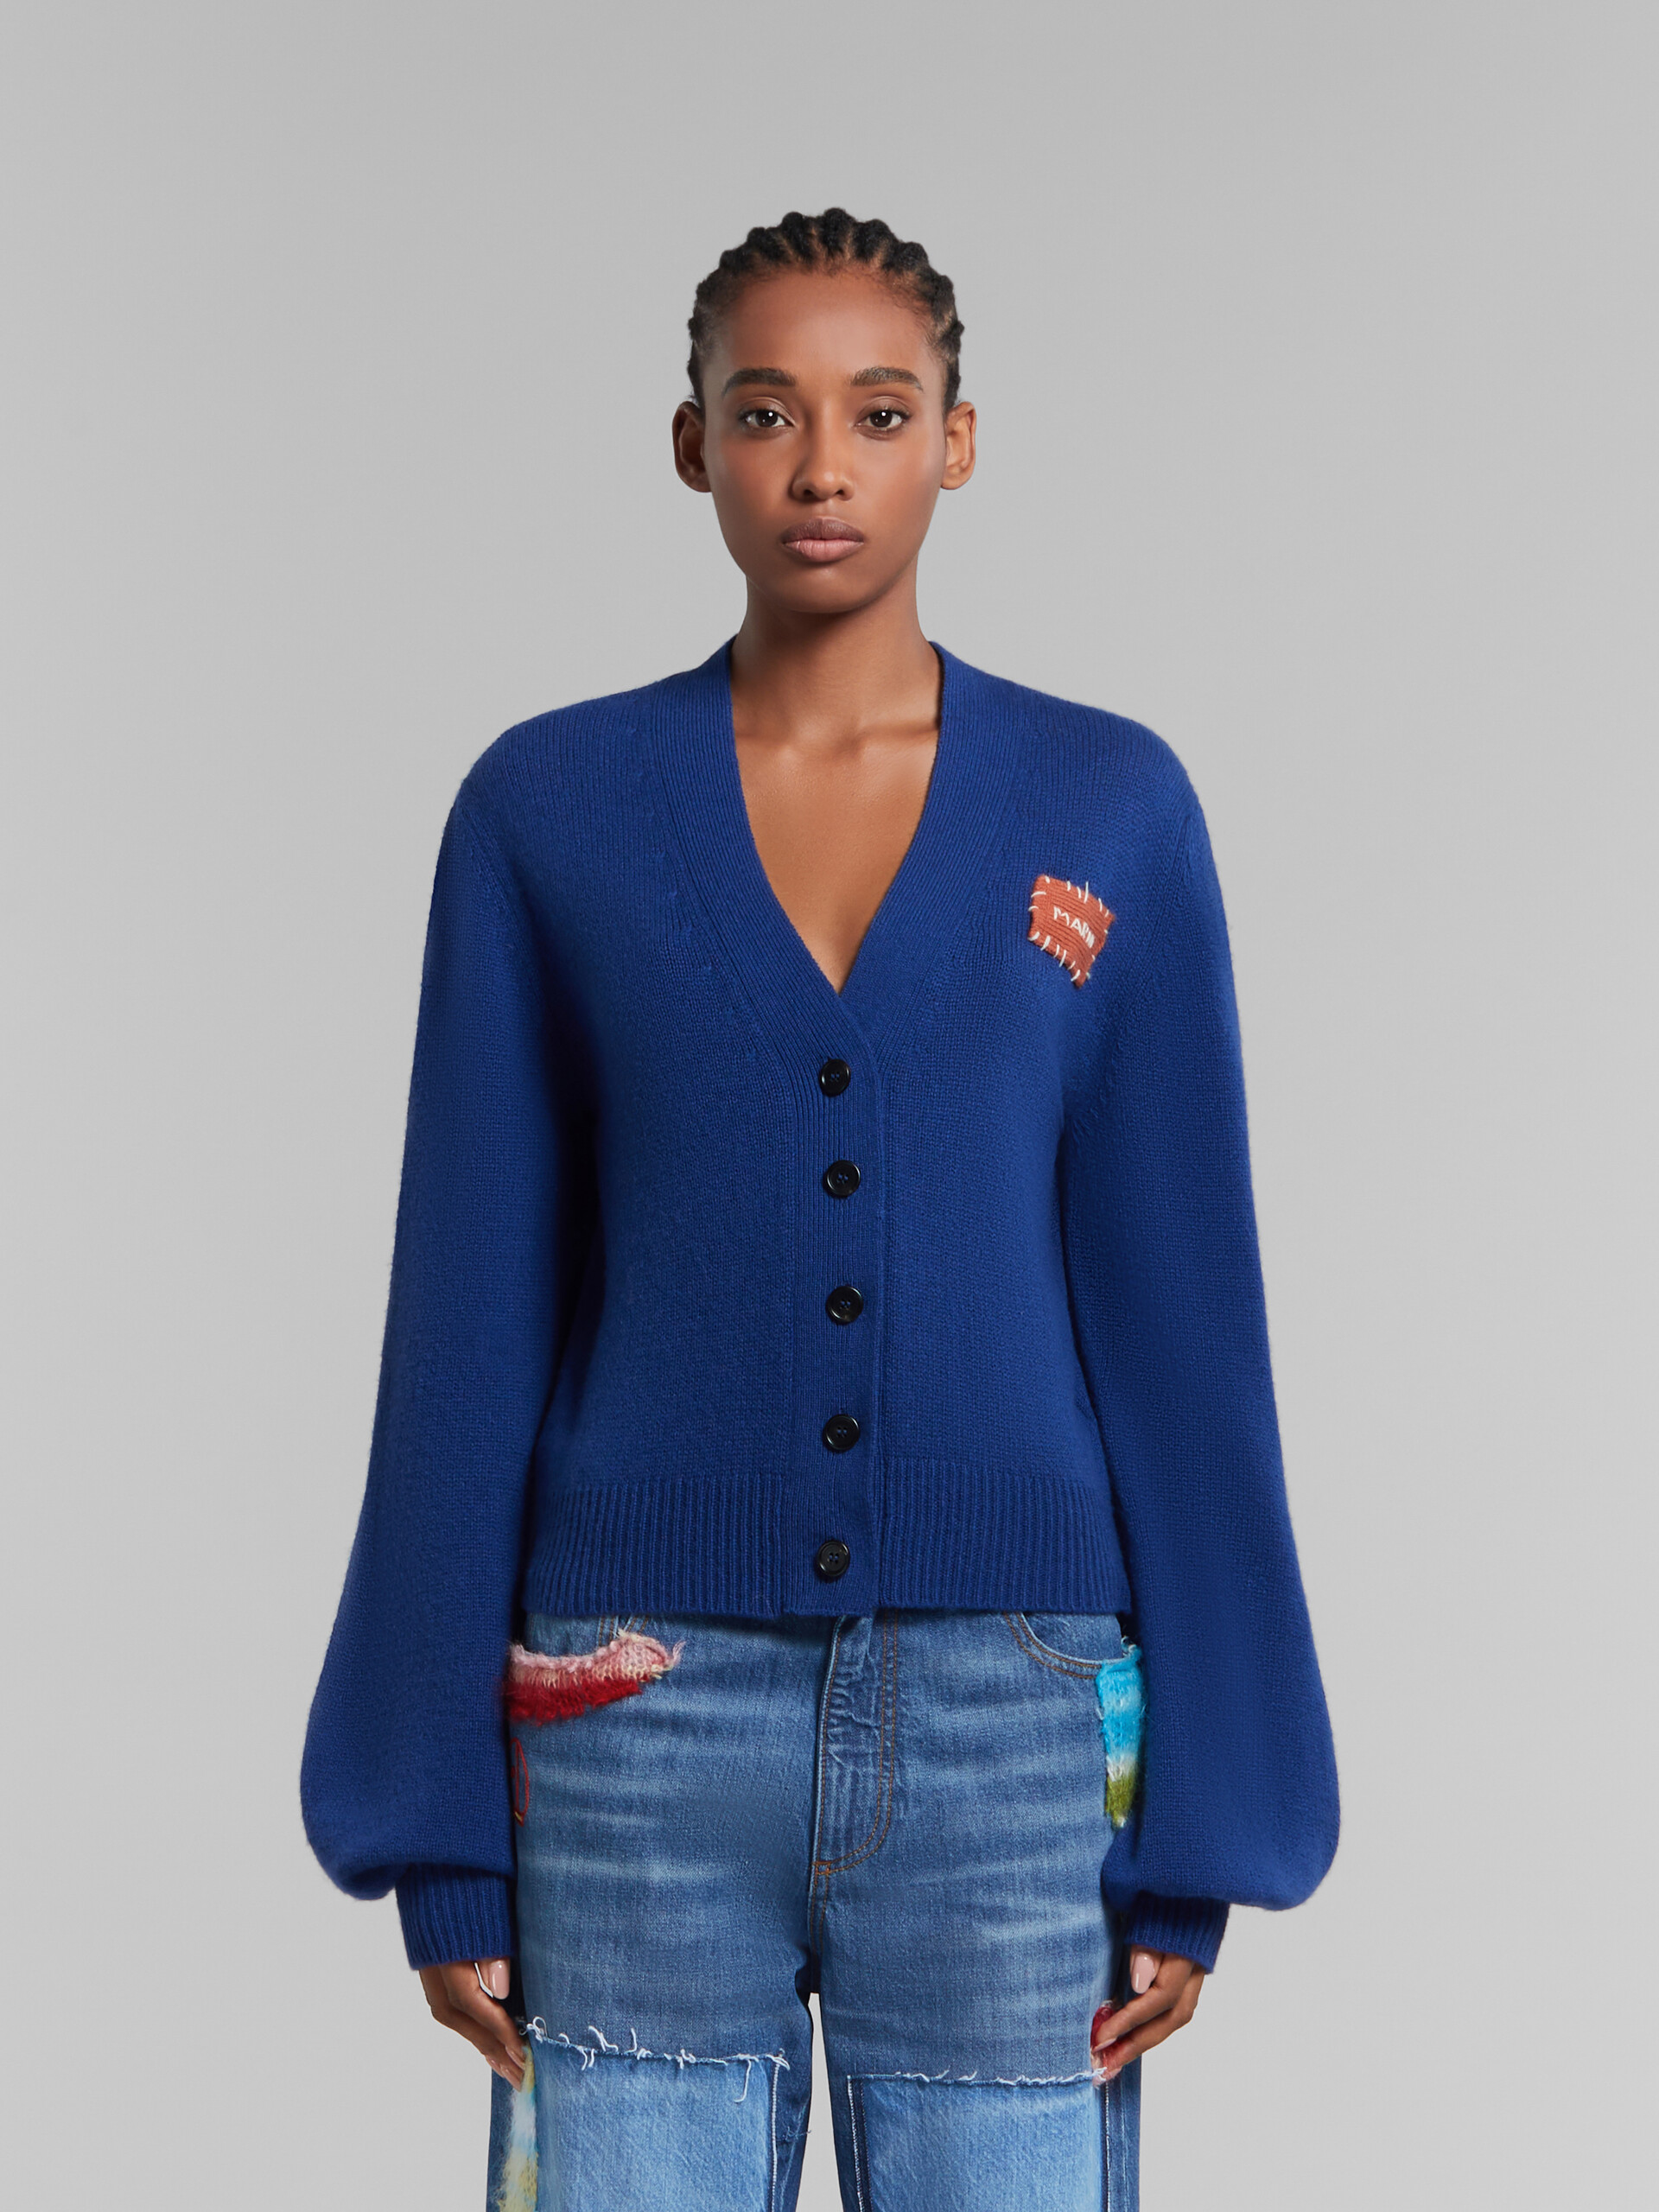 Cárdigan azul de cachemira con parche Marni efecto remiendo - jerseys - Image 2